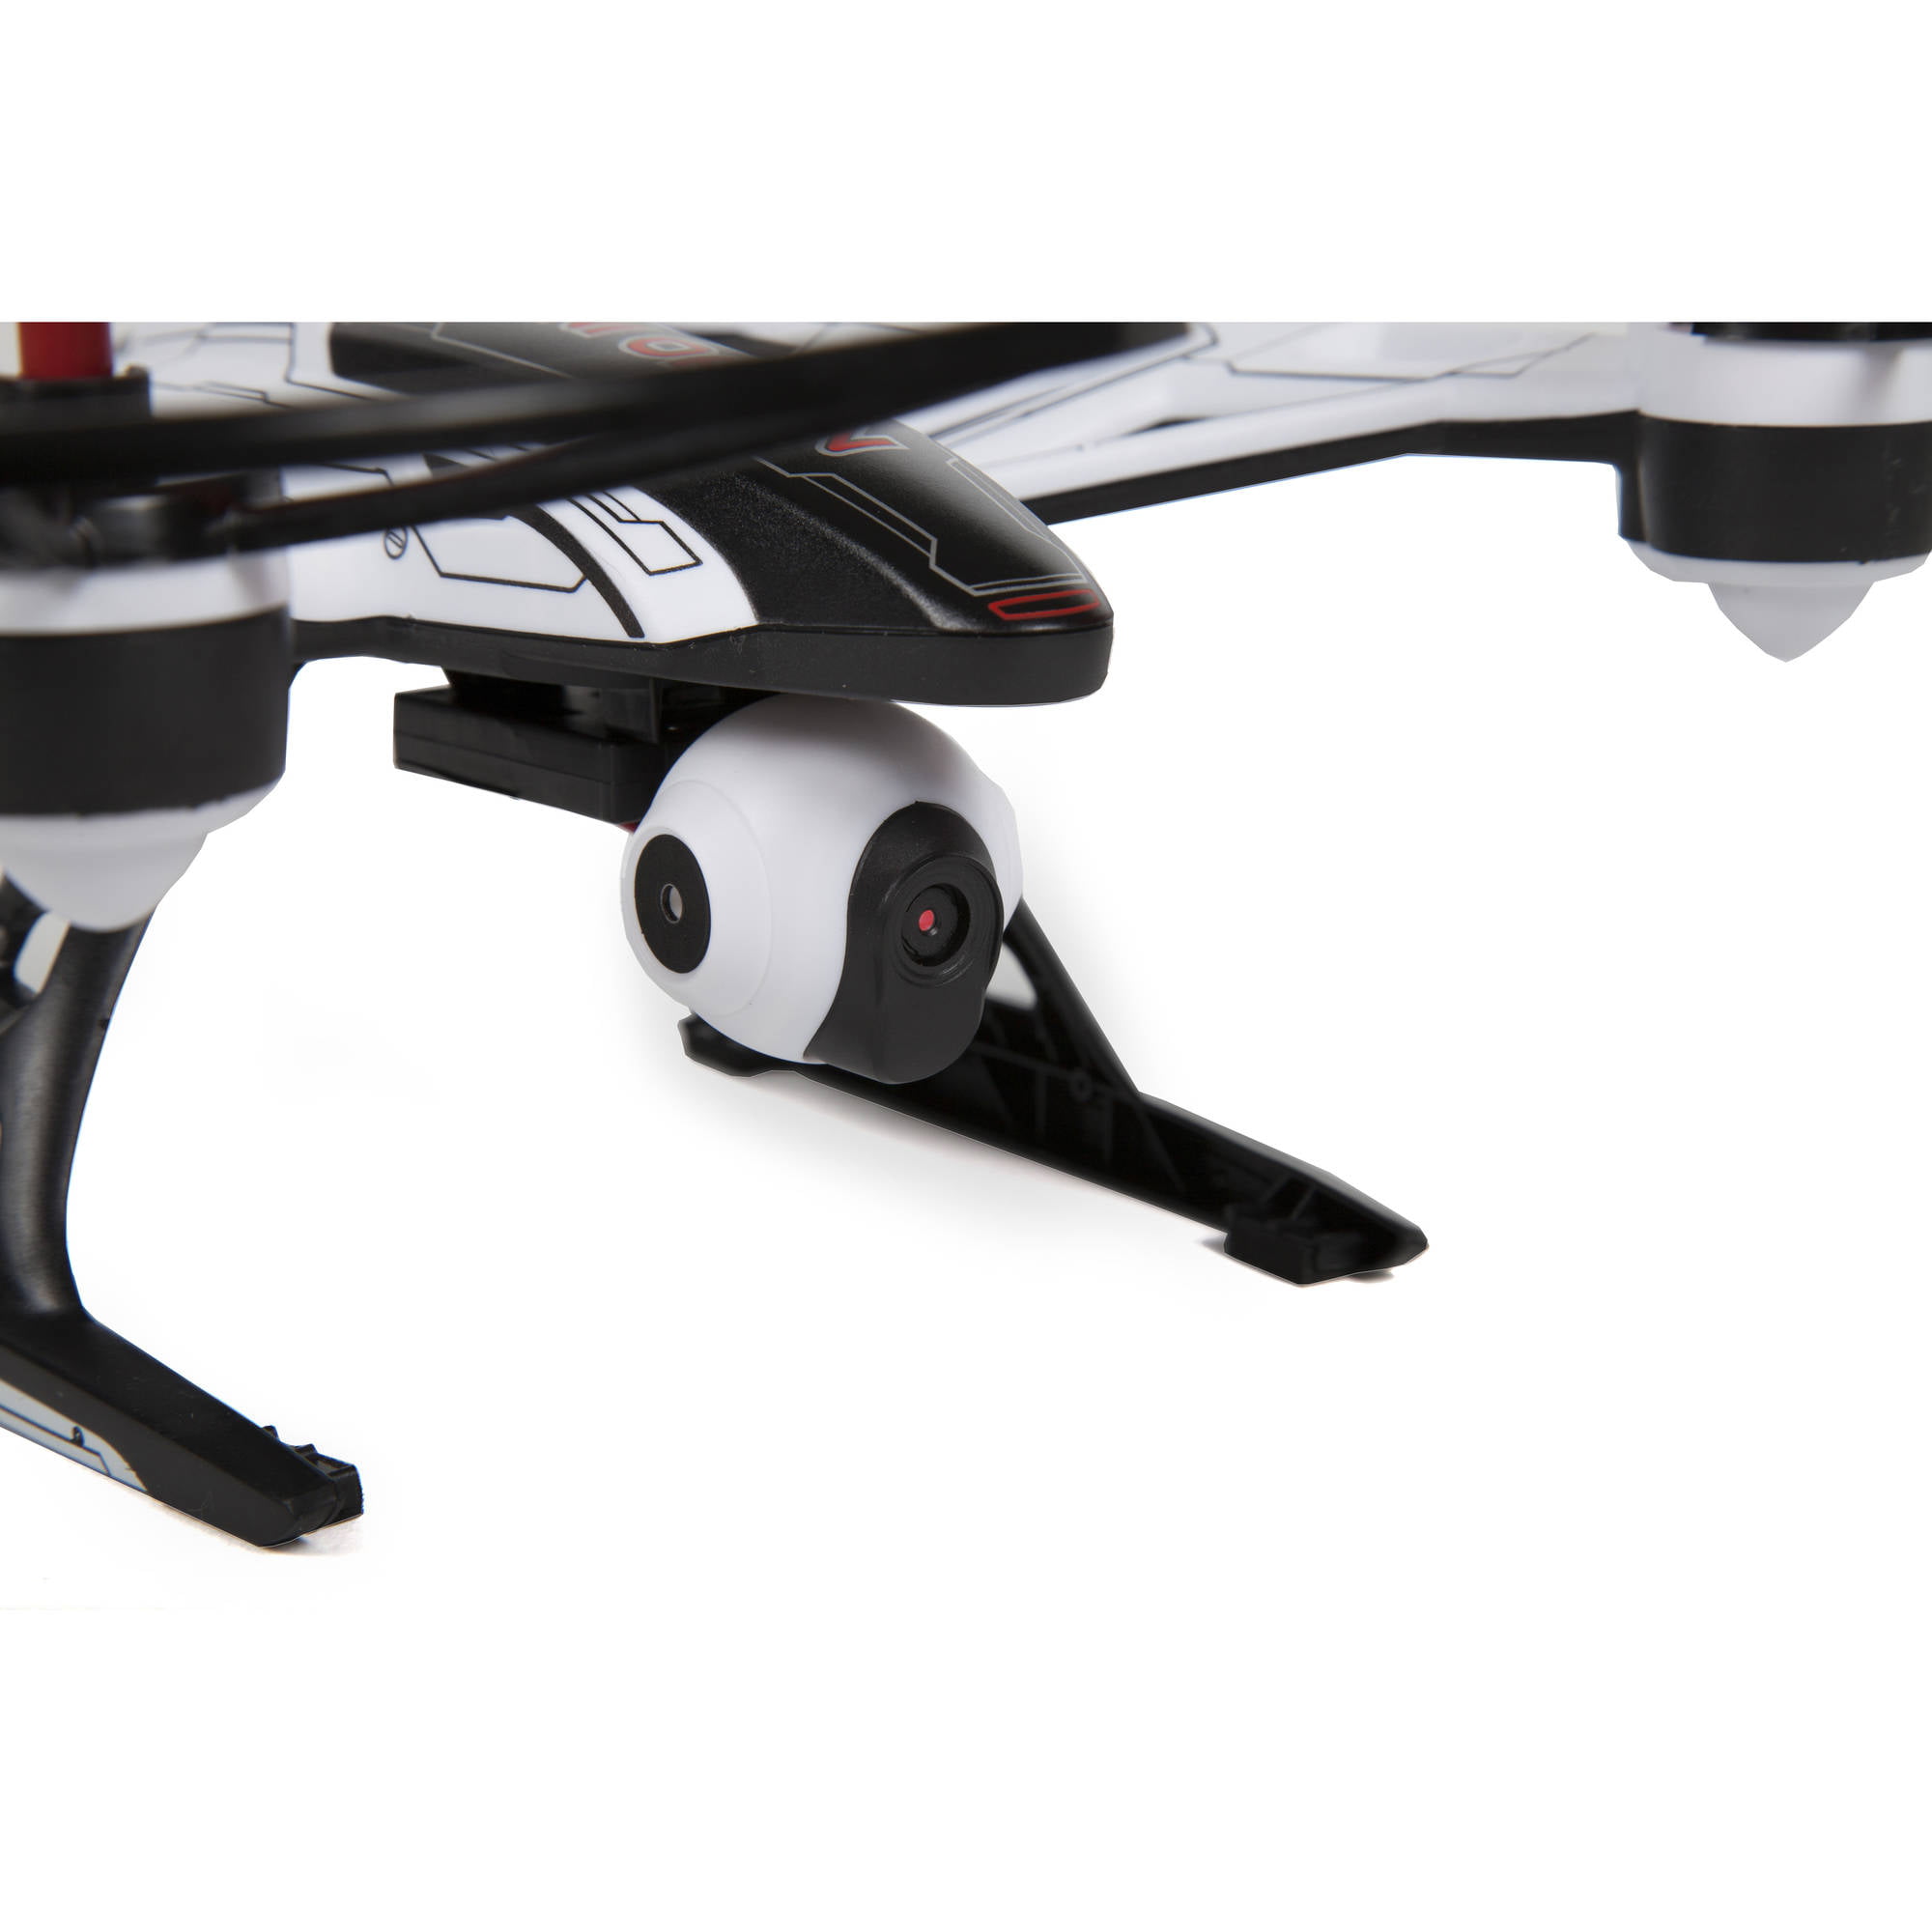 mini orion drone walmart